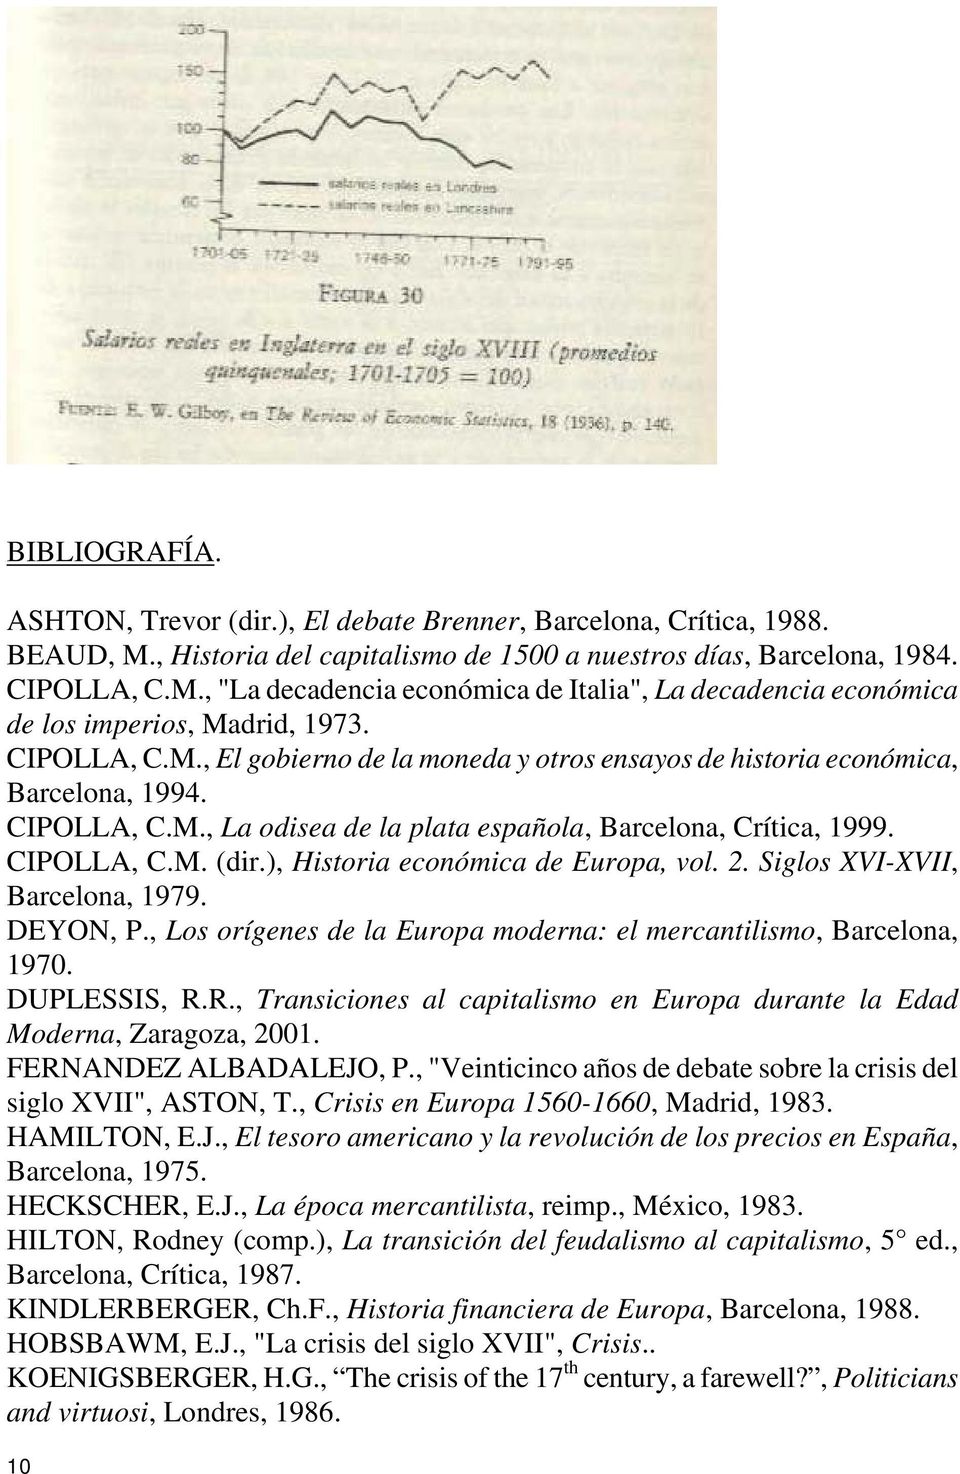 ), Historia económica de Europa, vol. 2. Siglos XVI-XVII, Barcelona, 1979. DEYON, P., Los orígenes de la Europa moderna: el mercantilismo, Barcelona, 1970. DUPLESSIS, R.